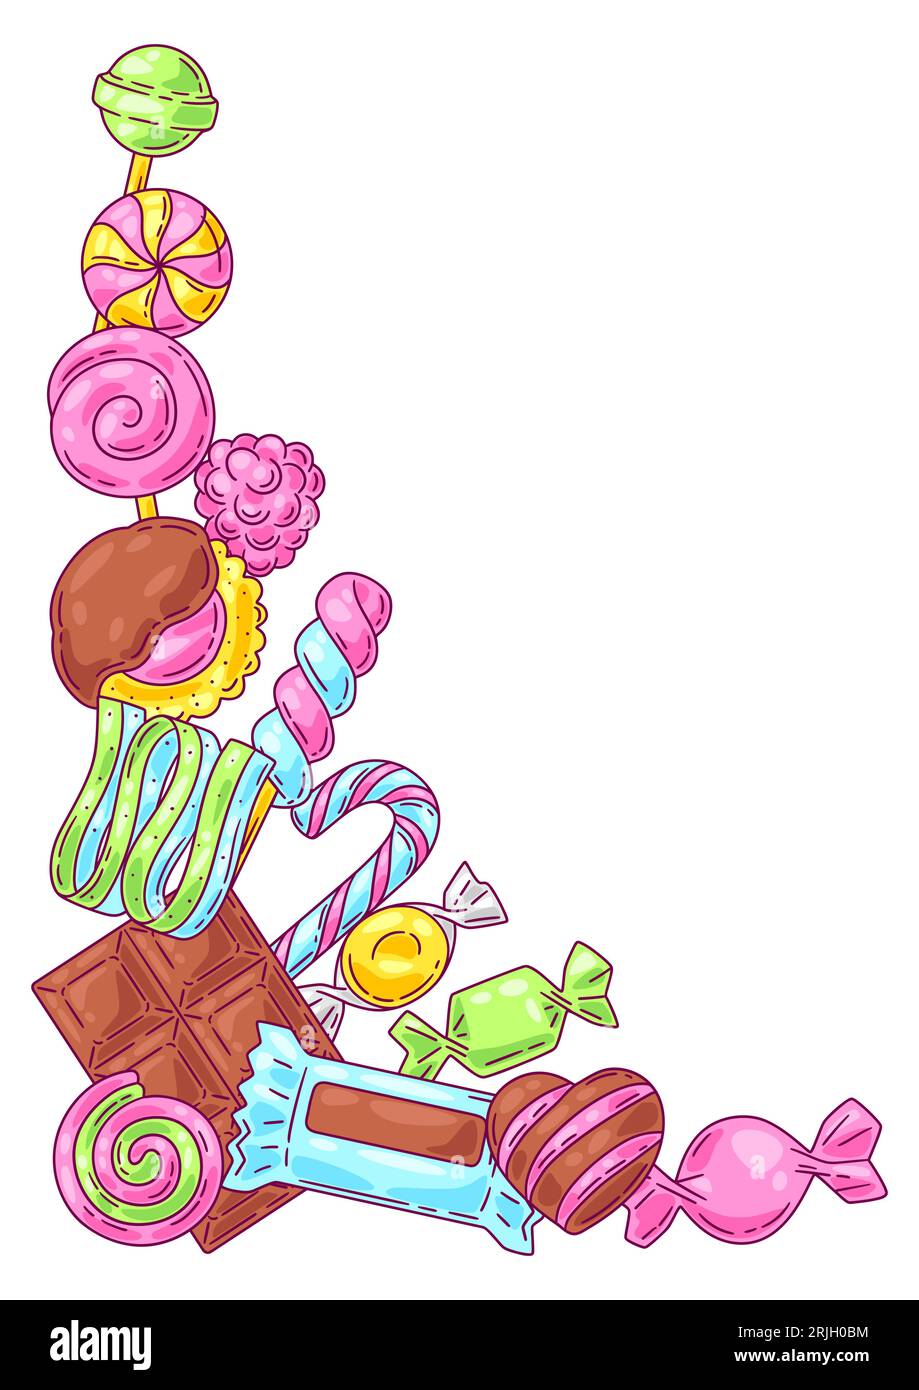 Hintergrund mit Süßigkeiten und Süßigkeiten. Design für Süßwaren oder Süßwarenladen. Stock Vektor